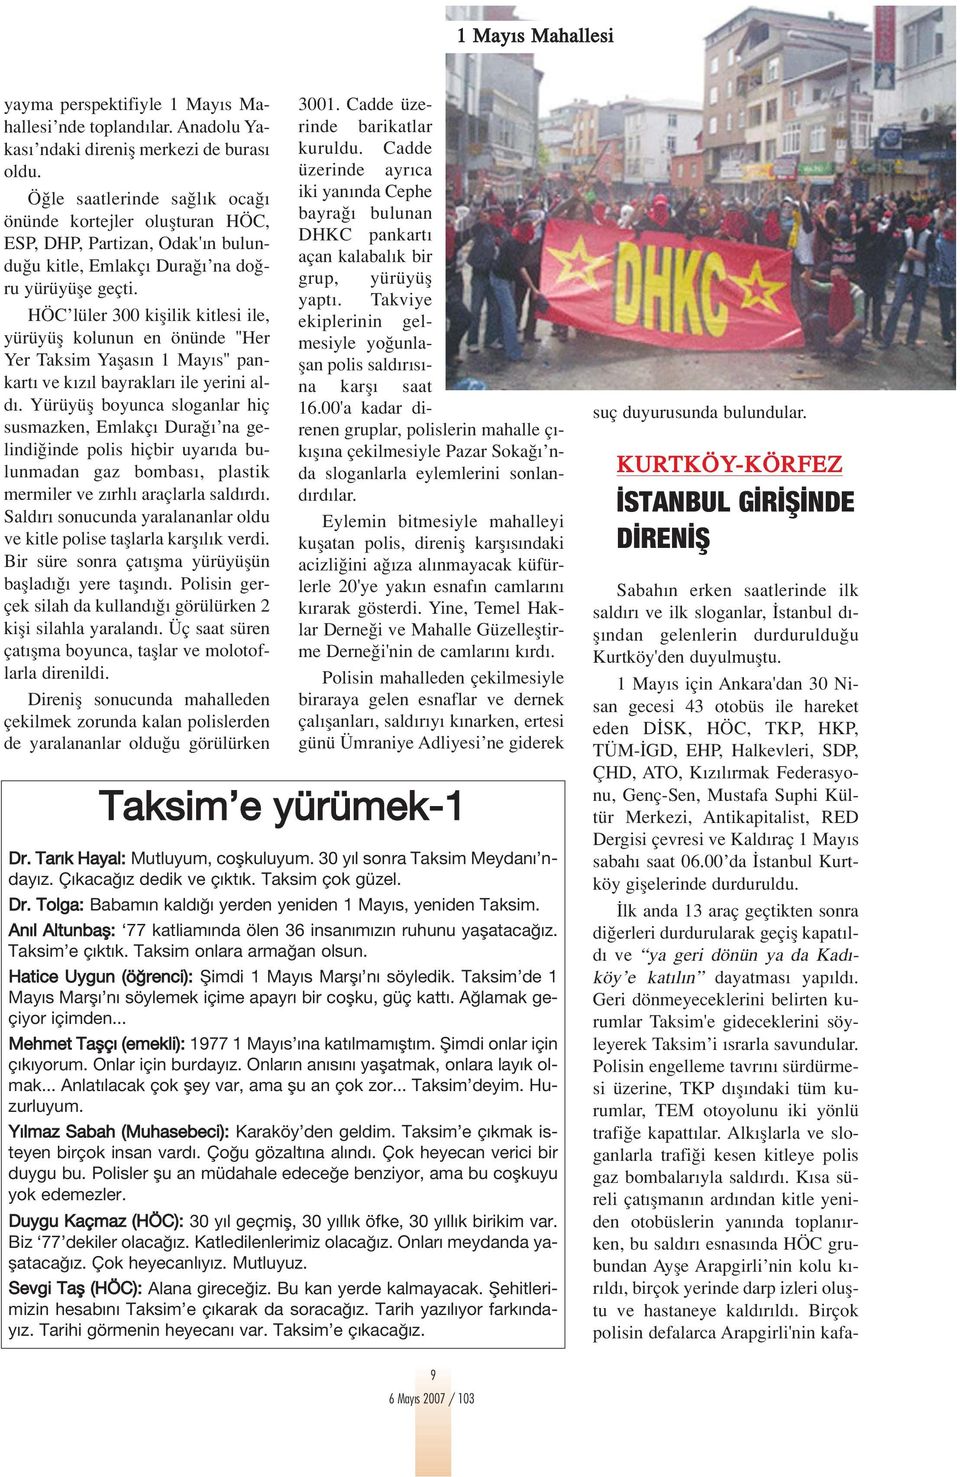 HÖC lüler 300 kiflilik kitlesi ile, yürüyüfl kolunun en önünde ''Her Yer Taksim Yaflas n 1 May s'' pankart ve k z l bayraklar ile yerini ald.